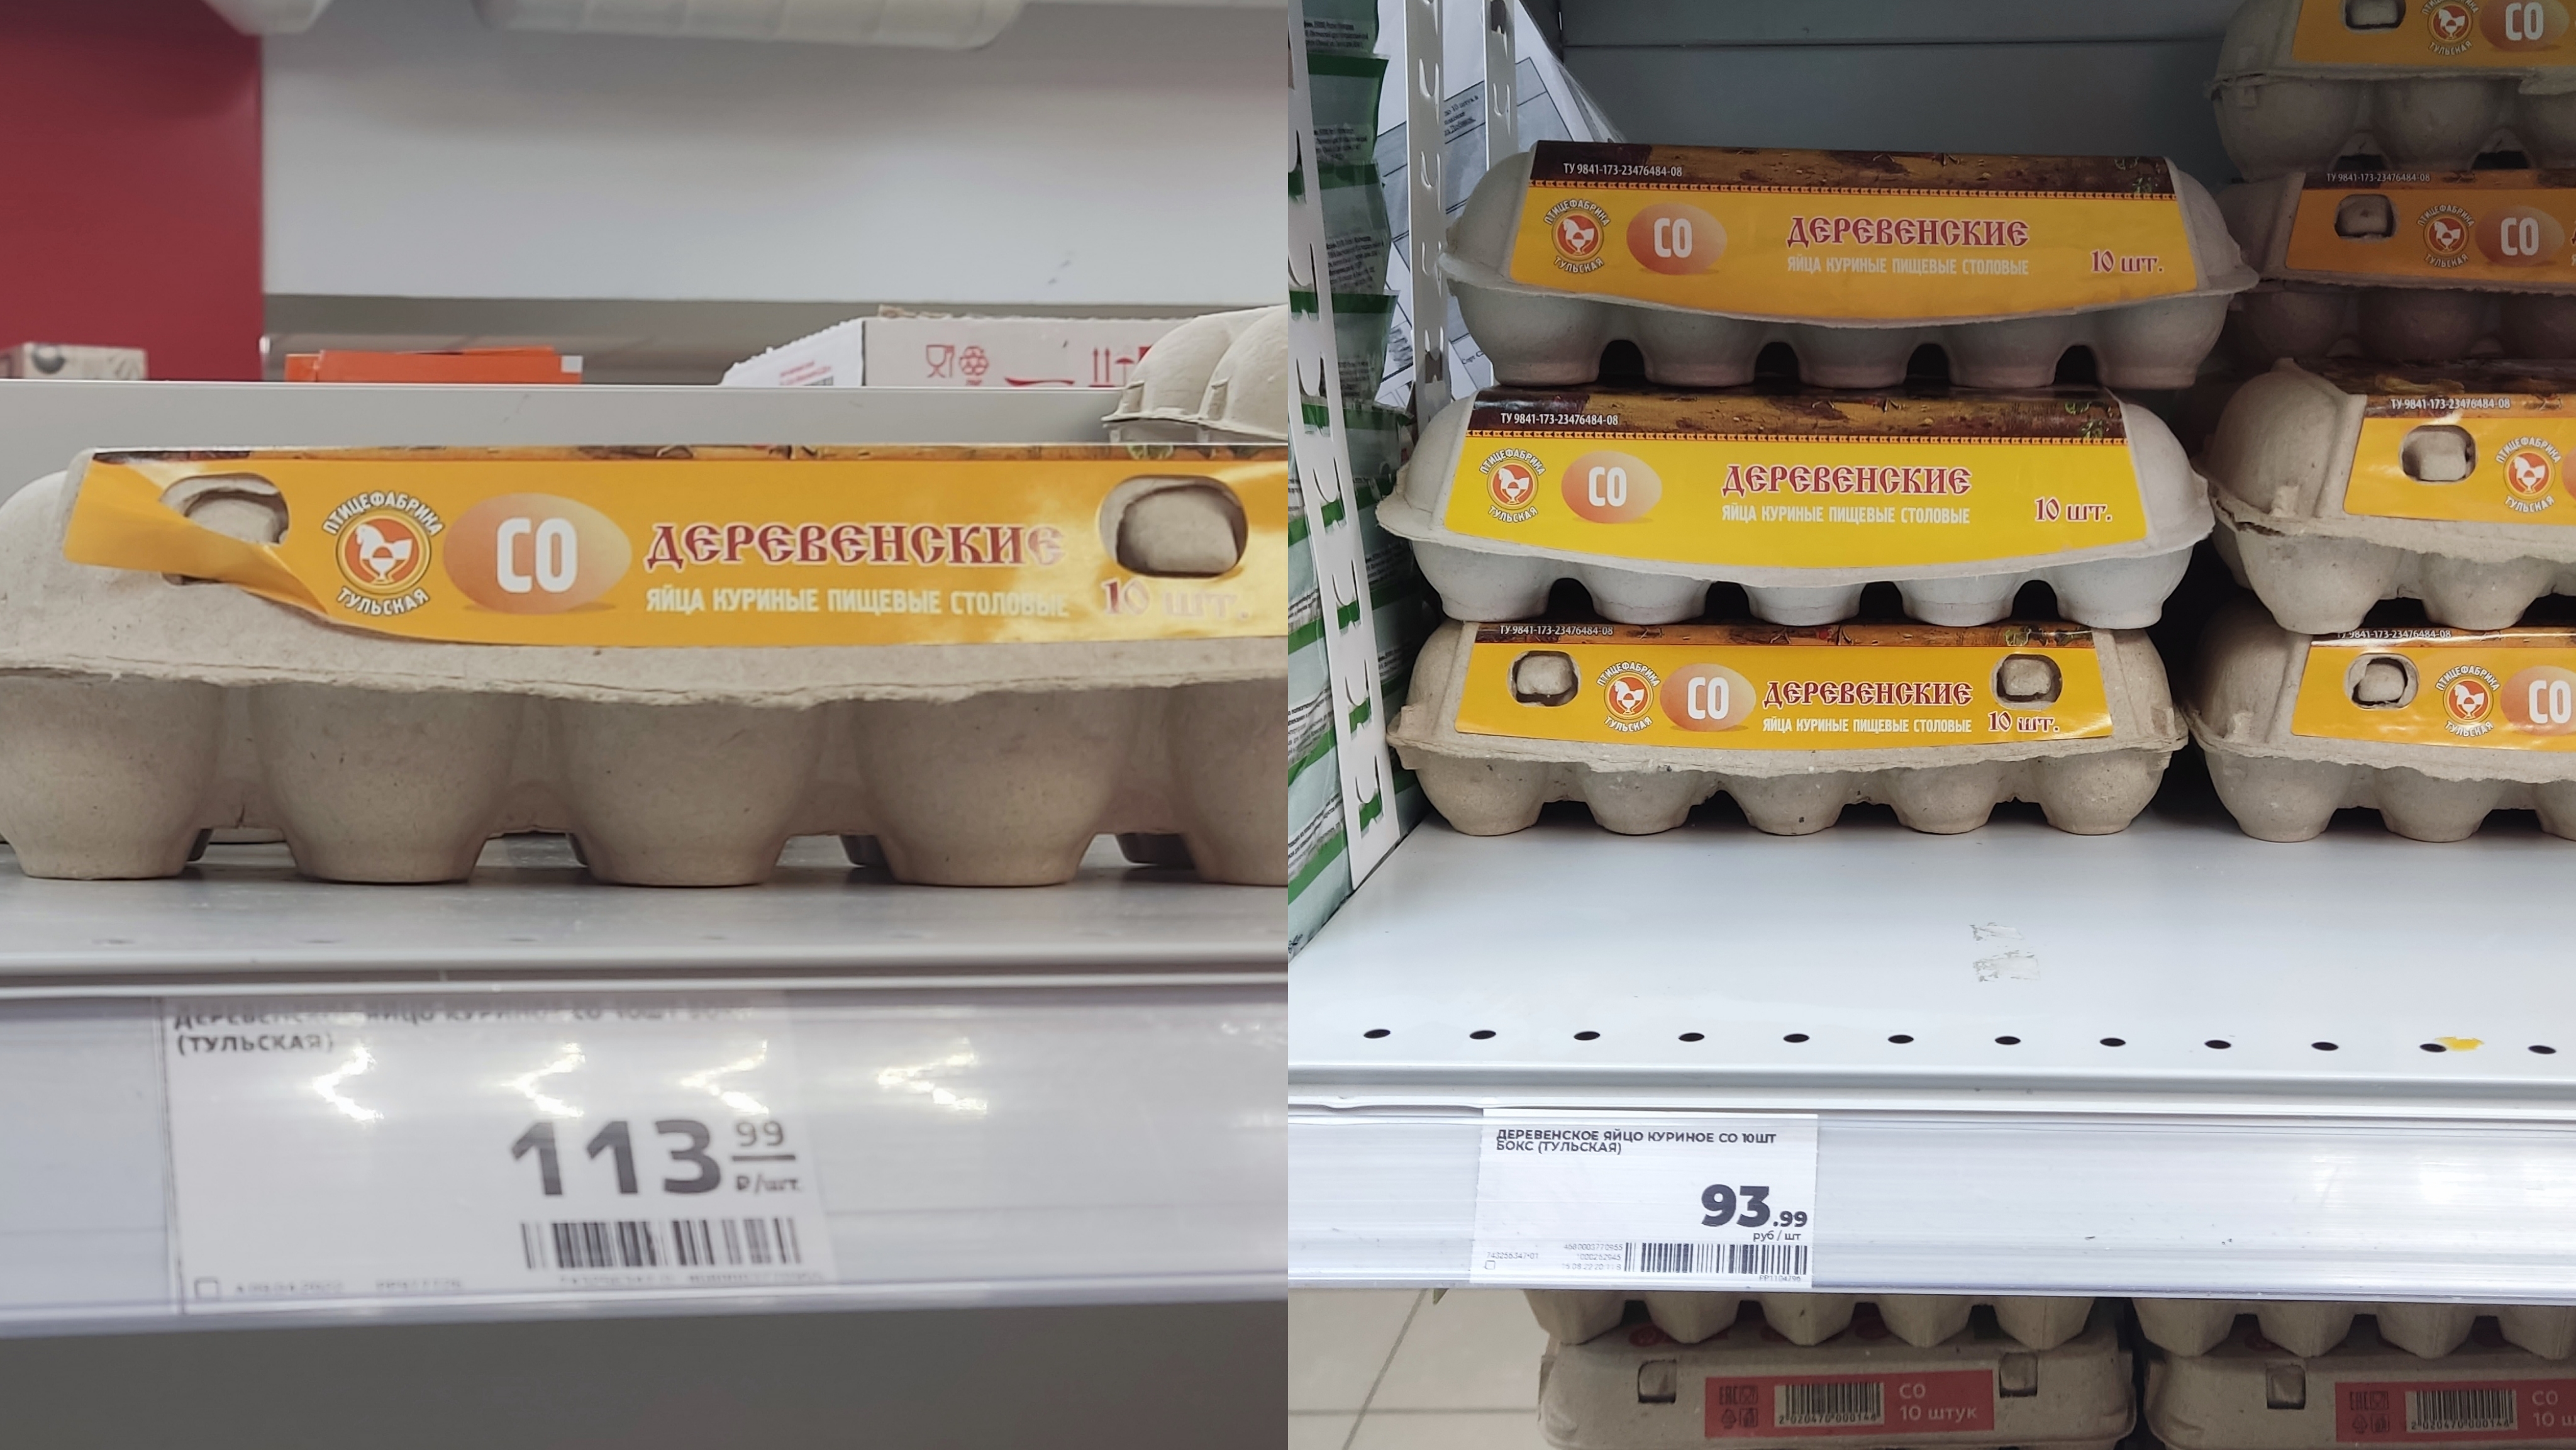 Агрофирма закупает куриные яйца 30 50 42